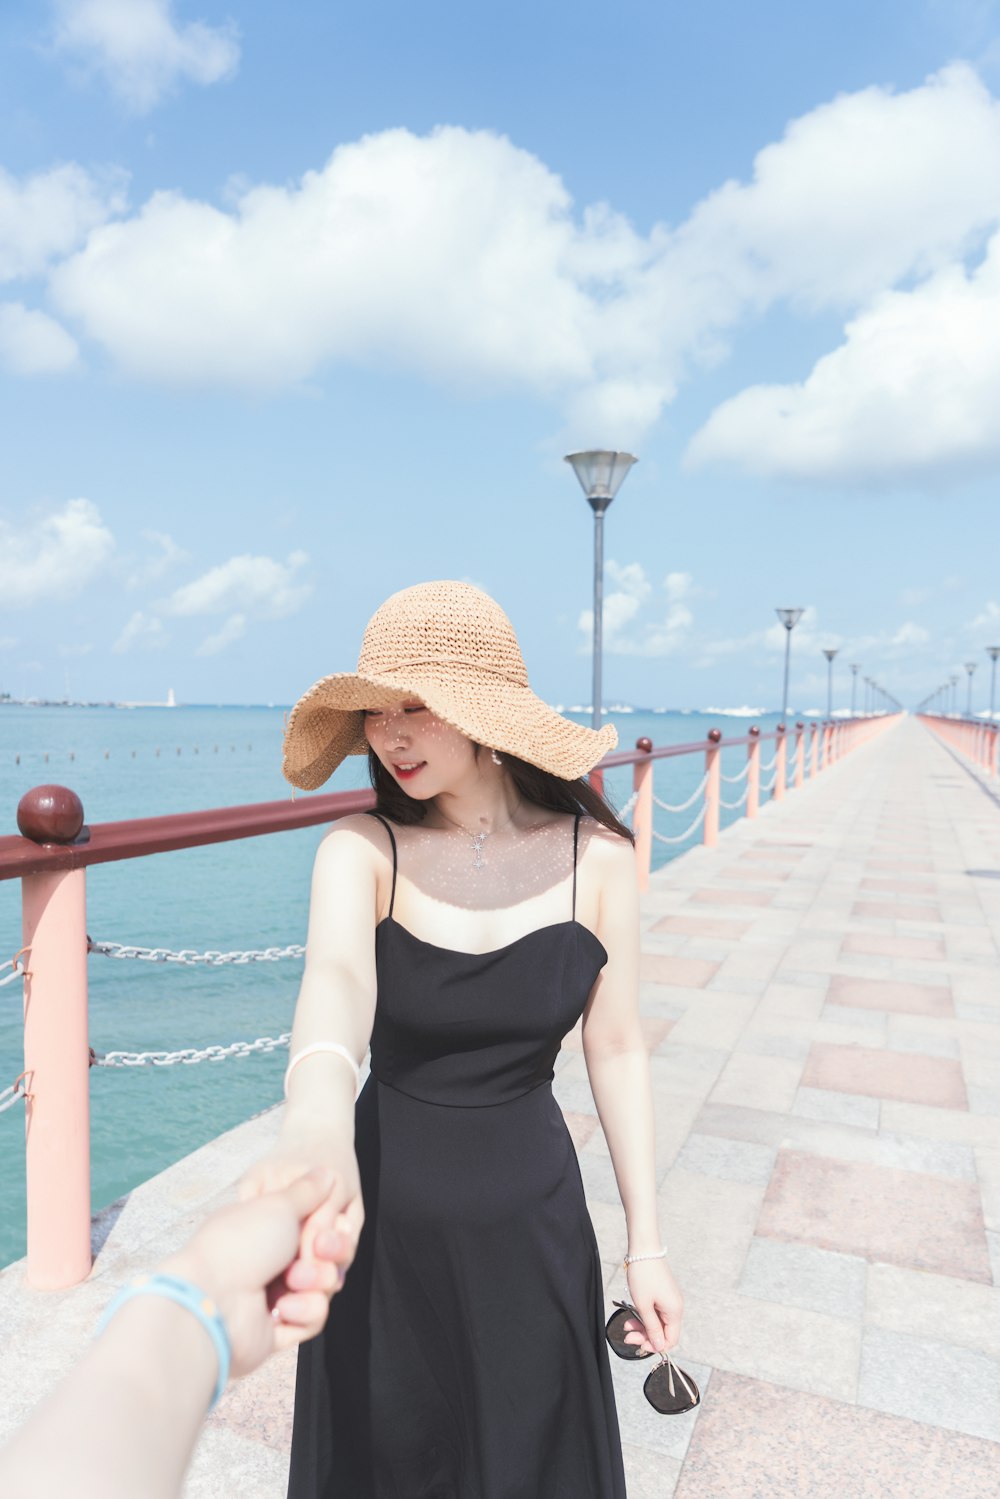 Femme en débardeur noir portant un chapeau de soleil marron debout à côté de balustrades en métal rouge pendant la journée